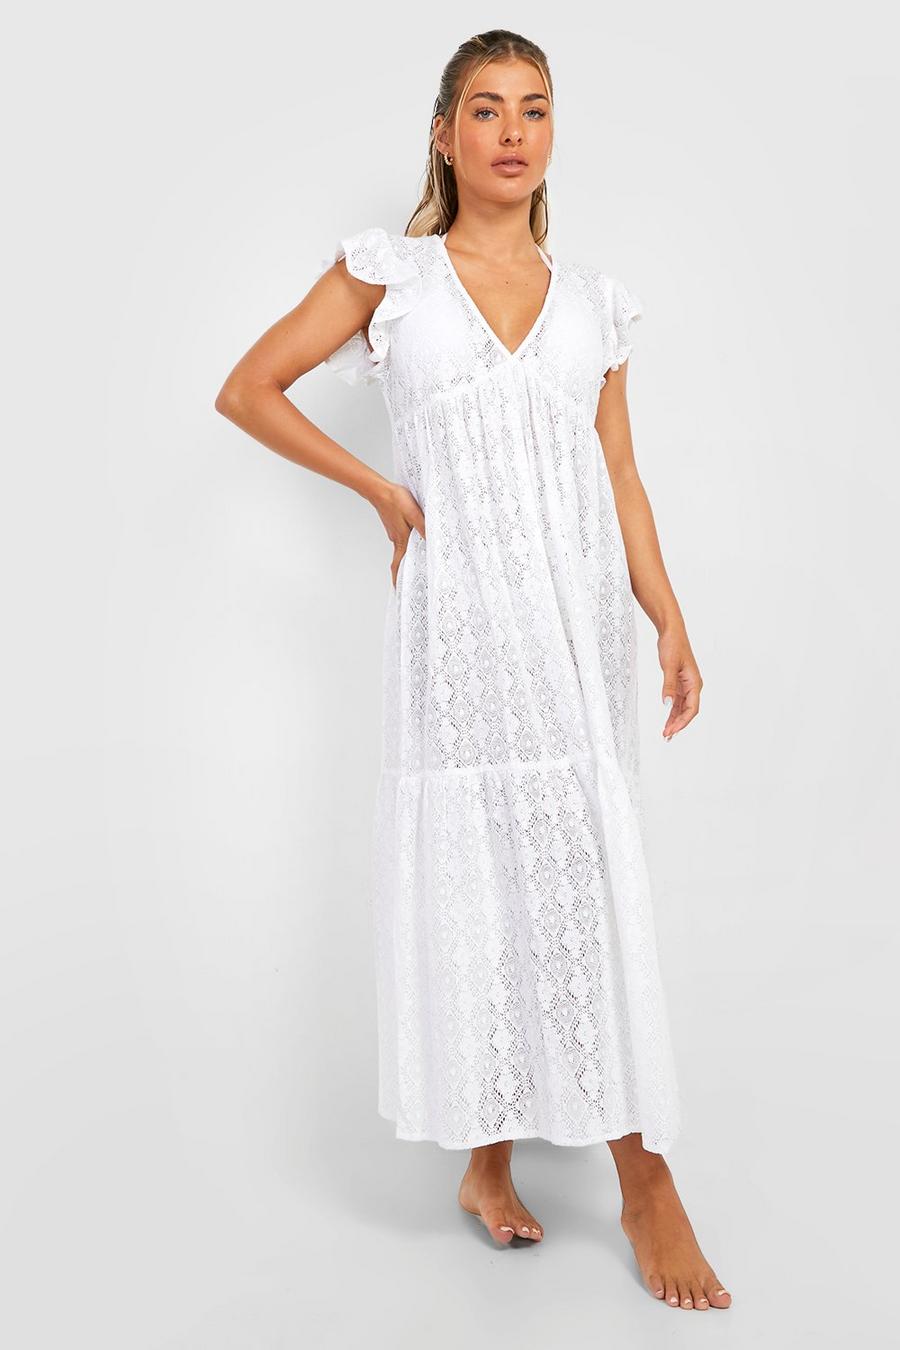 לבן bianco שמלת חוף מקסי מעל בגד הים עם מלמלה ותחרה